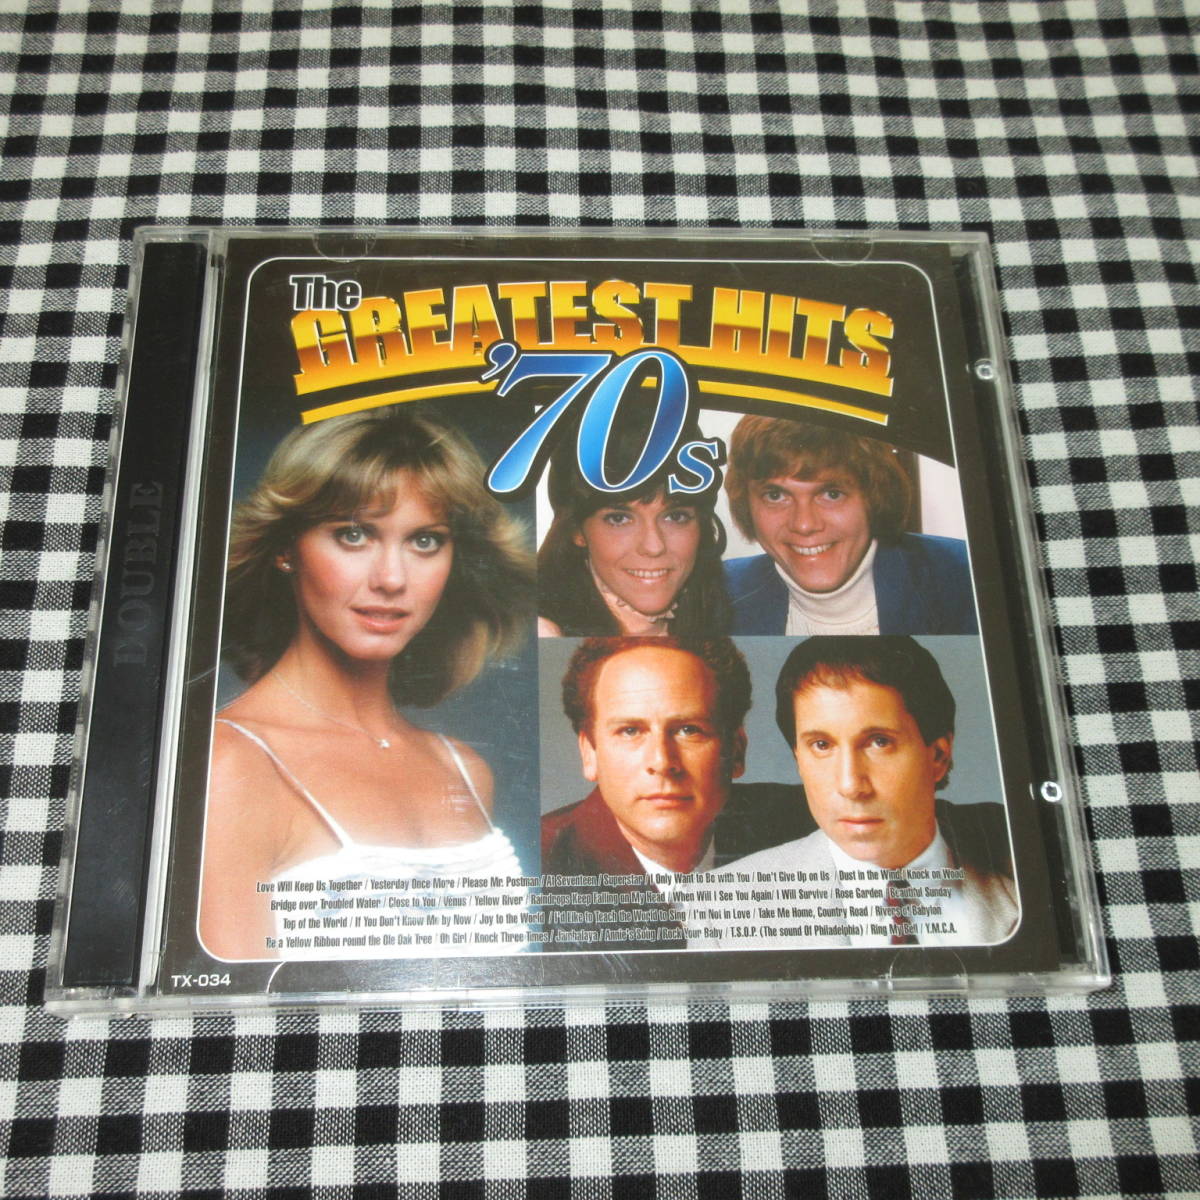 The Greatest Hits ’70s《輸入盤2CD》◆カーペンターズ/オリビア・ニュートン・ジョン/ジョン・デンバー/ジャニス・イアン/10cc_画像1